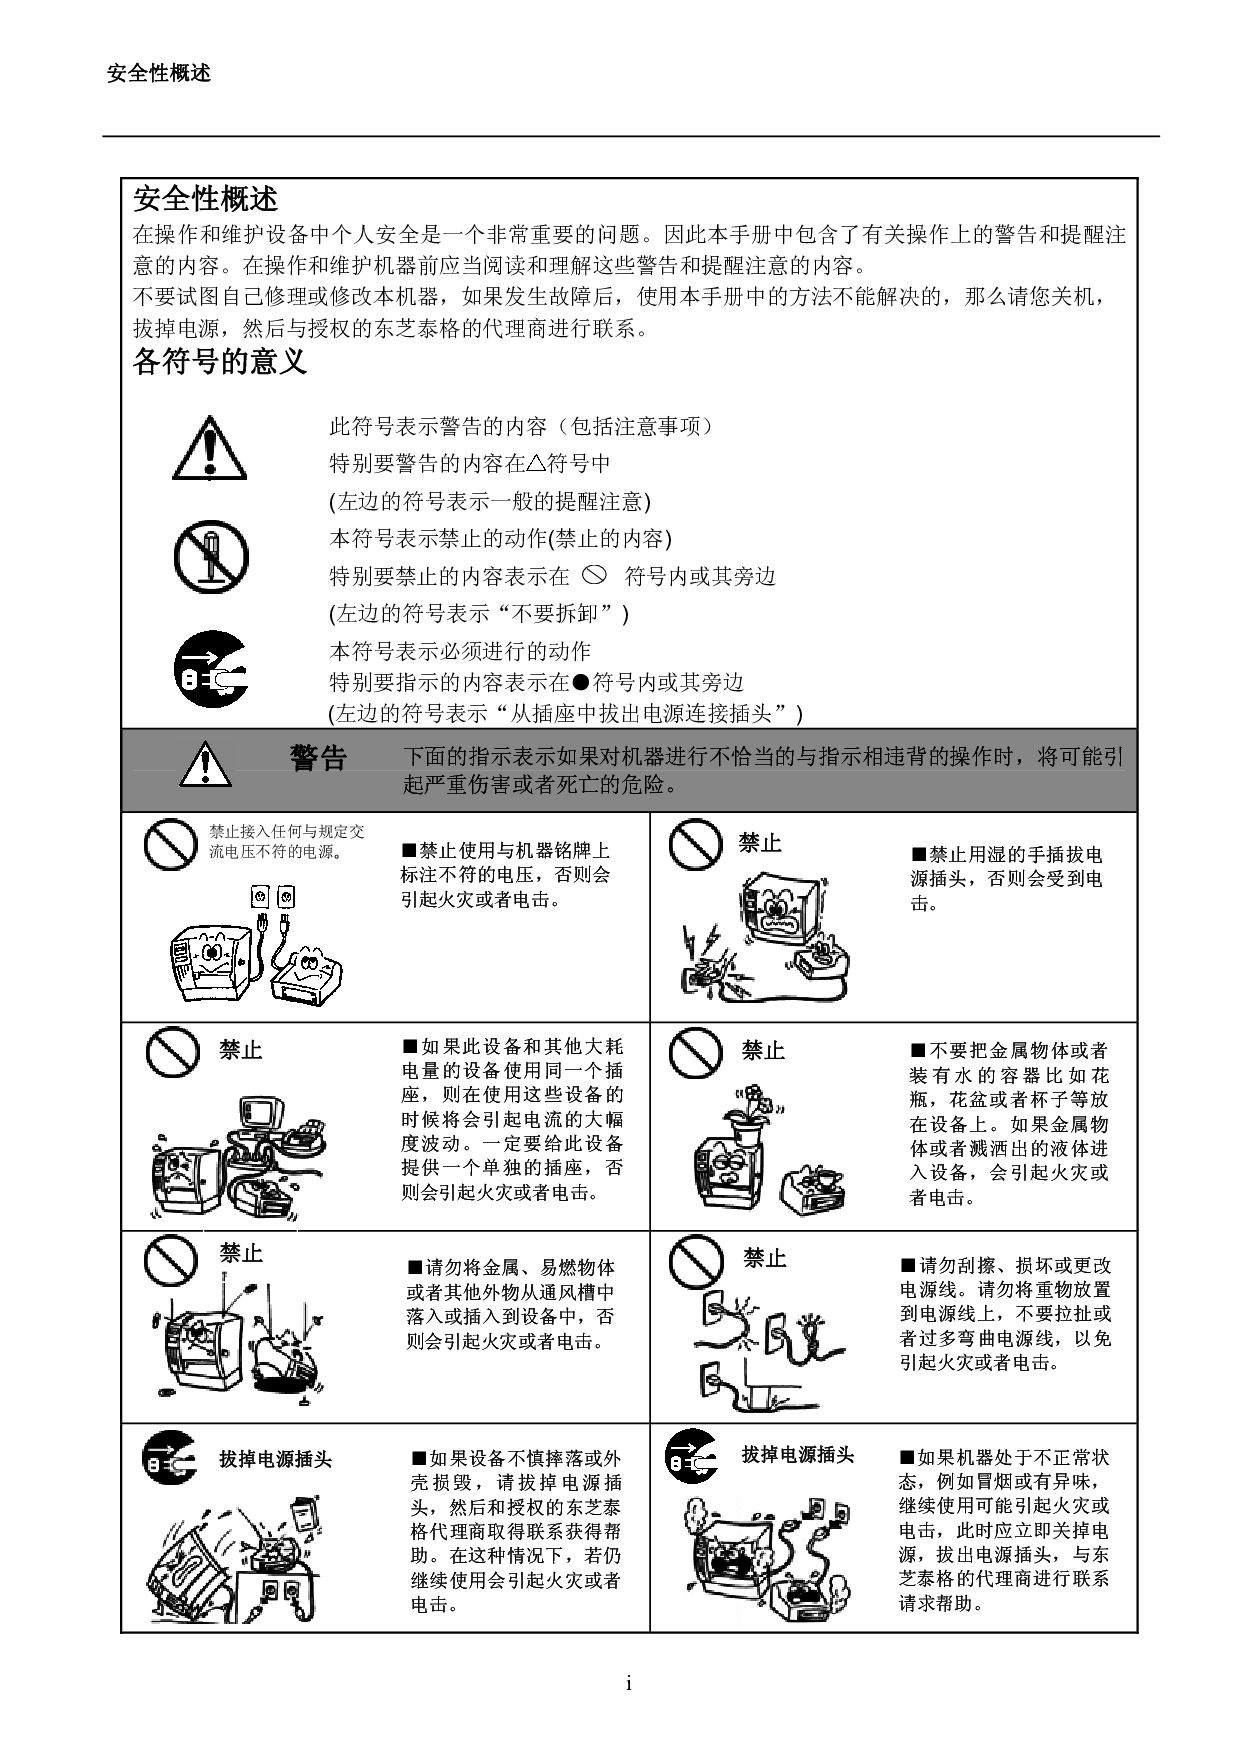 东芝 Toshiba B-SX600 基础使用手册 第2页